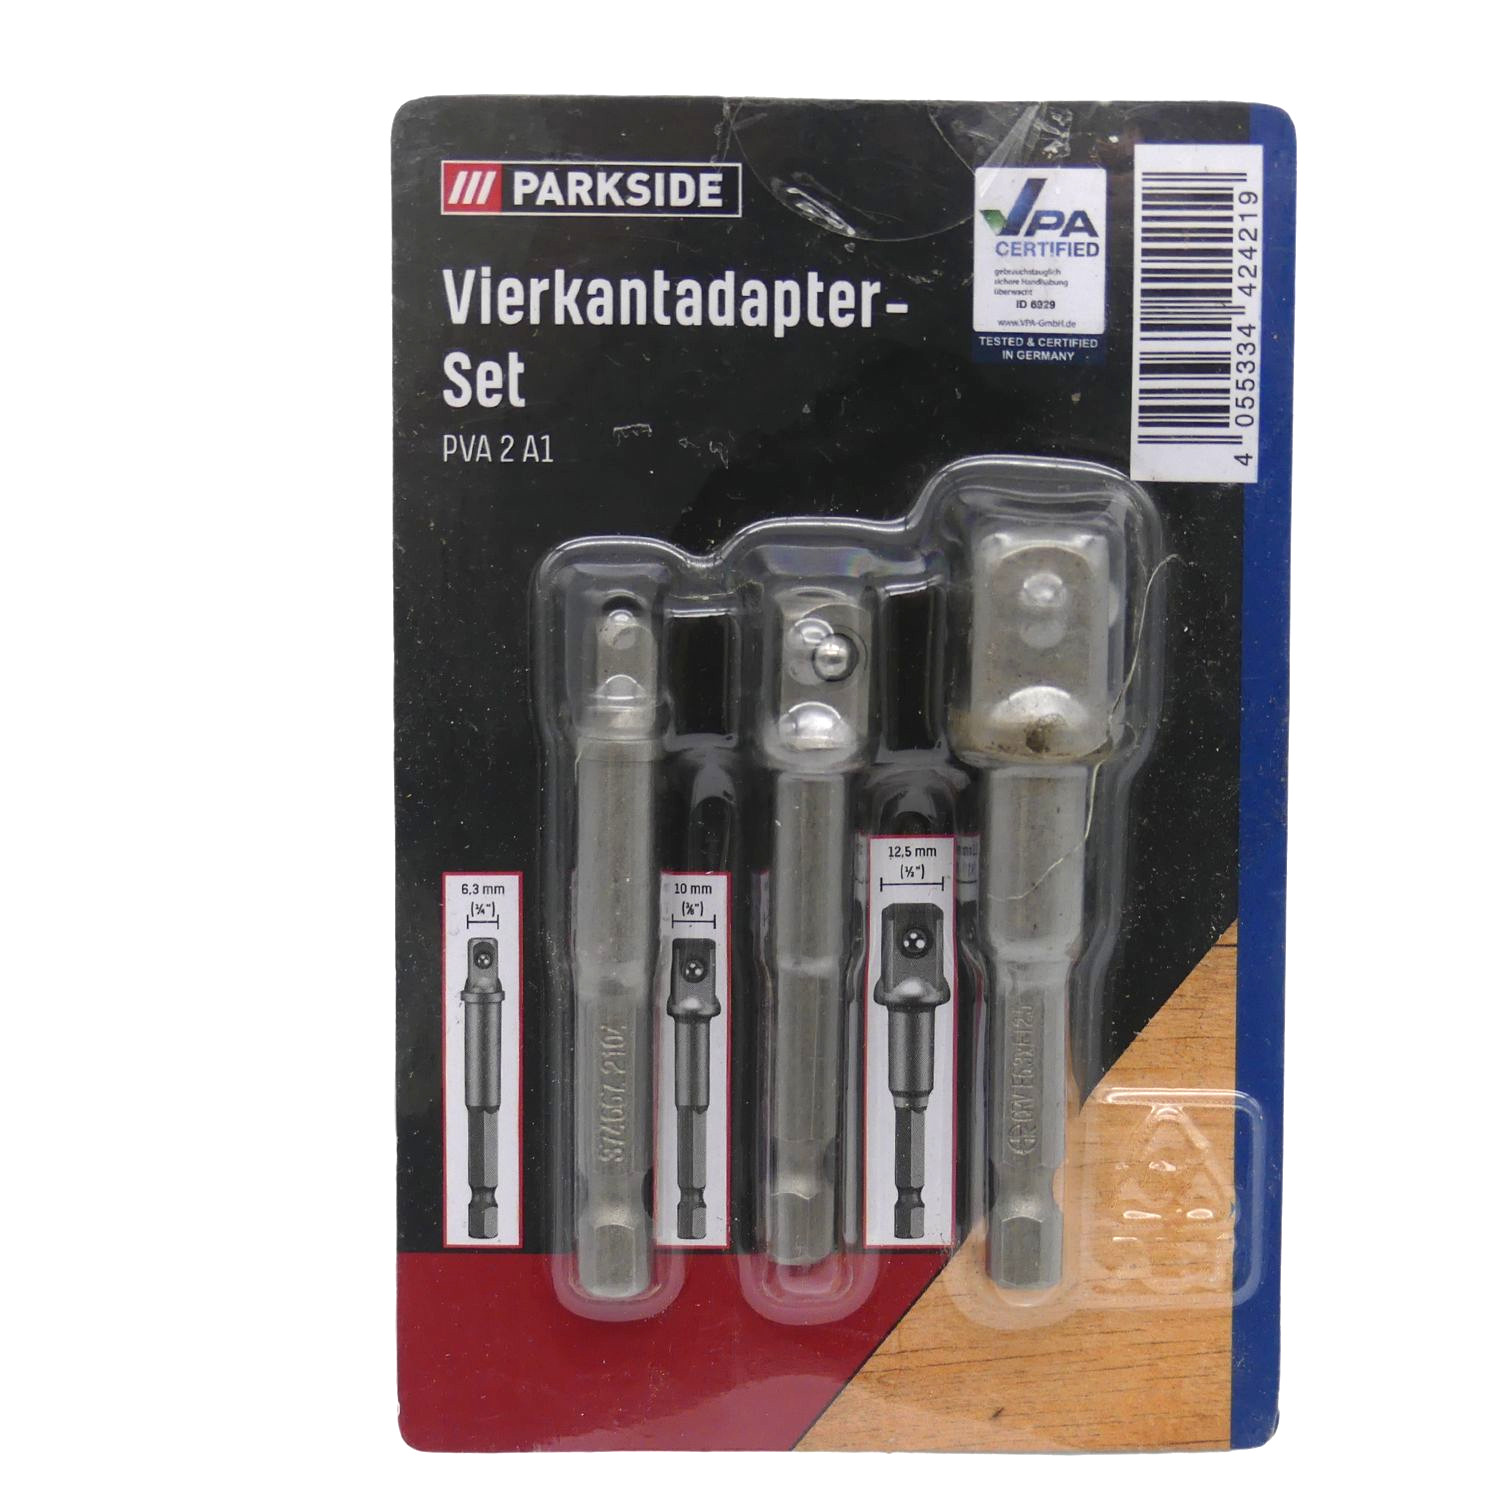 PARKSIDE Vierkantadapter-Set PVA 2 A1 für gängige Steckschlüssel und  Bohrschrauber | Werkzeug | Haus & Garten | Aktionen | Alles für Ihren  Drucker - Druckerpatronen günstig kaufen!